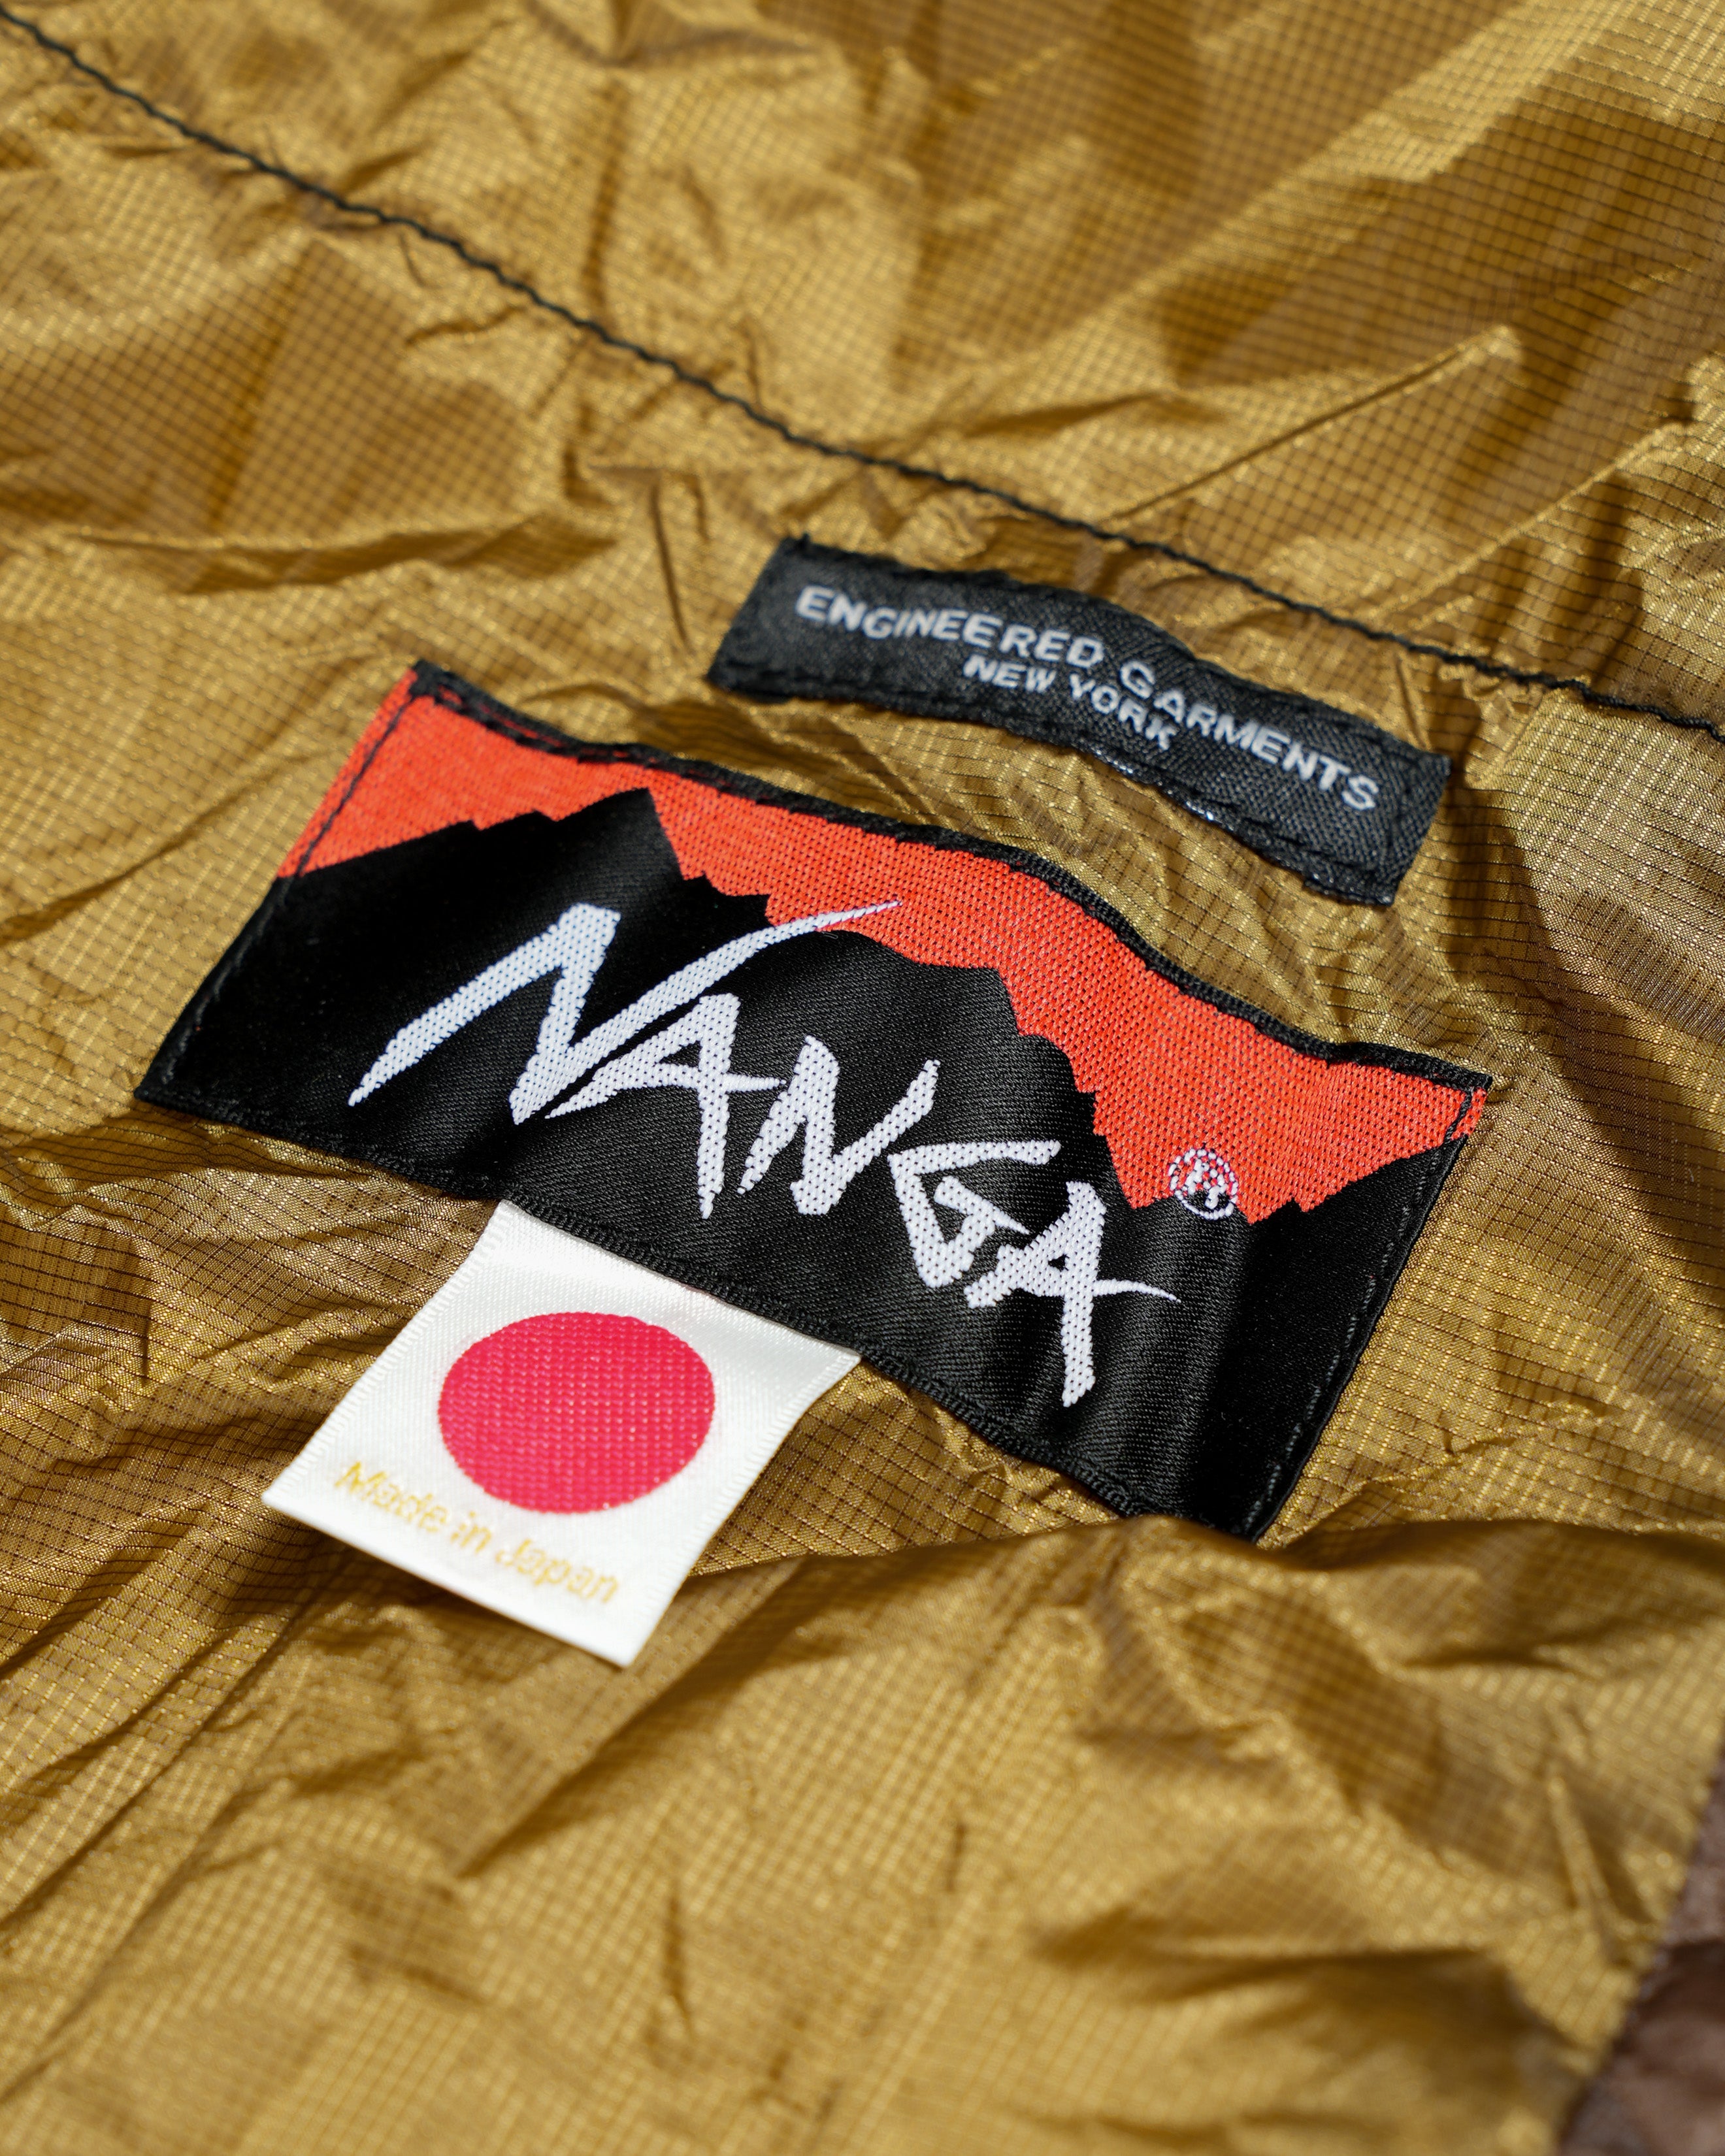 Engineered Garments x Nanga Aurora Light Sleeping Bag - Multi Color - Aurora Lt.